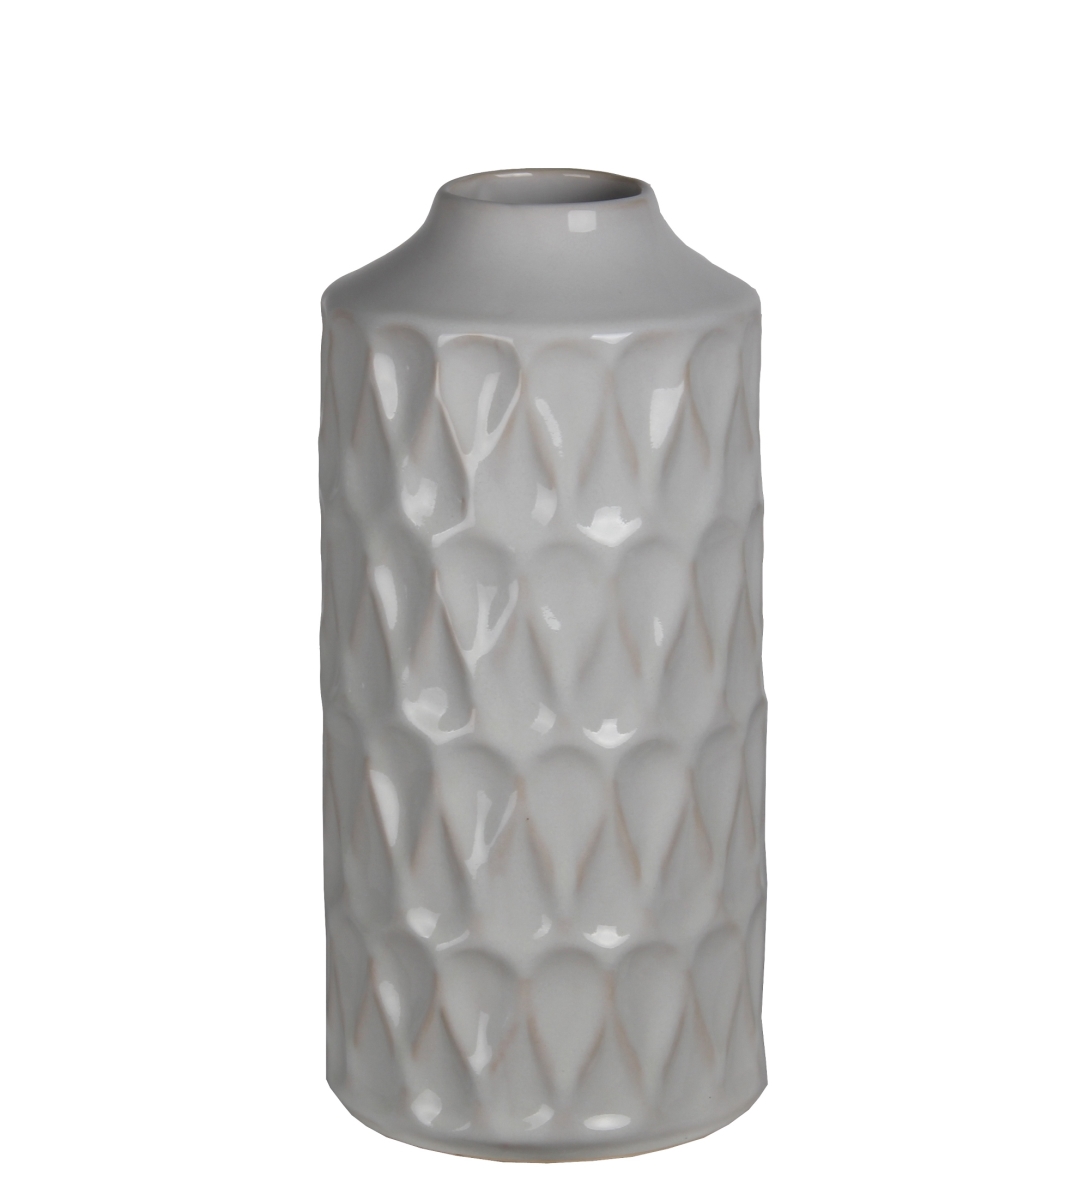 78196 6 X 6 X 13 In. Contemporary Ceramic Vase, Large